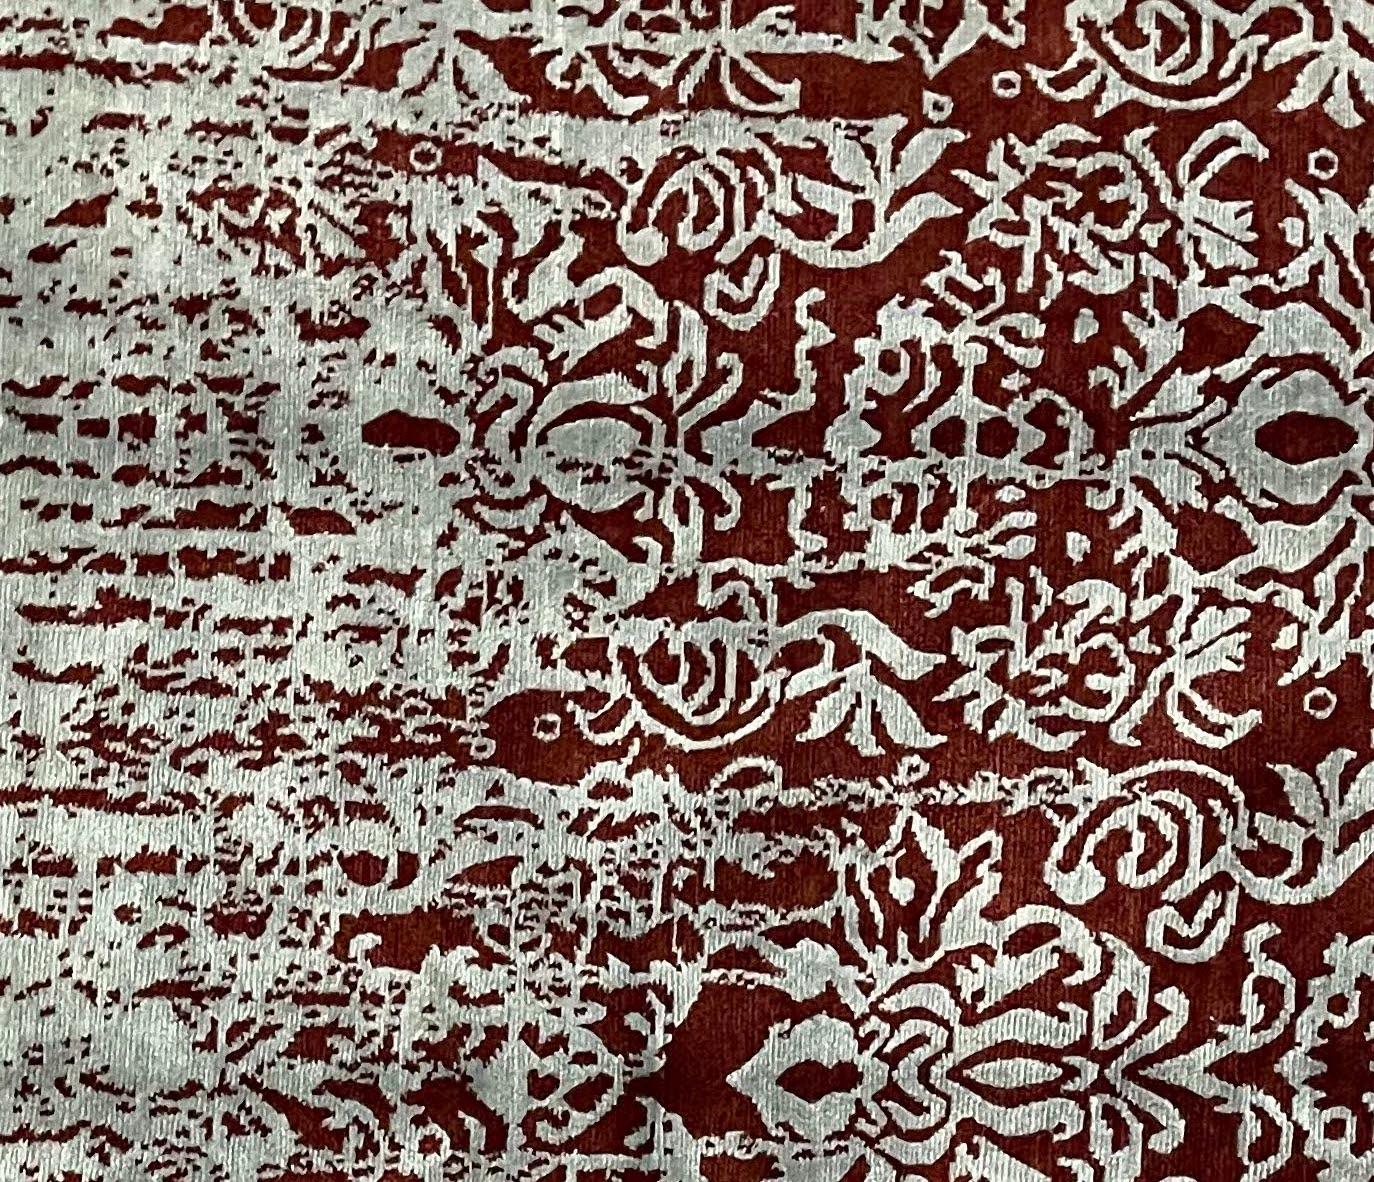 Le Népal est réputé pour ses produits de haute qualité fabriqués à la main. Dieser Teppich ist aus hochwertiger Tibet Hochland Wolle  et Bambus-Seide gefertigt. L'utilisation de matériaux de qualité supérieure et de techniques traditionnelles de